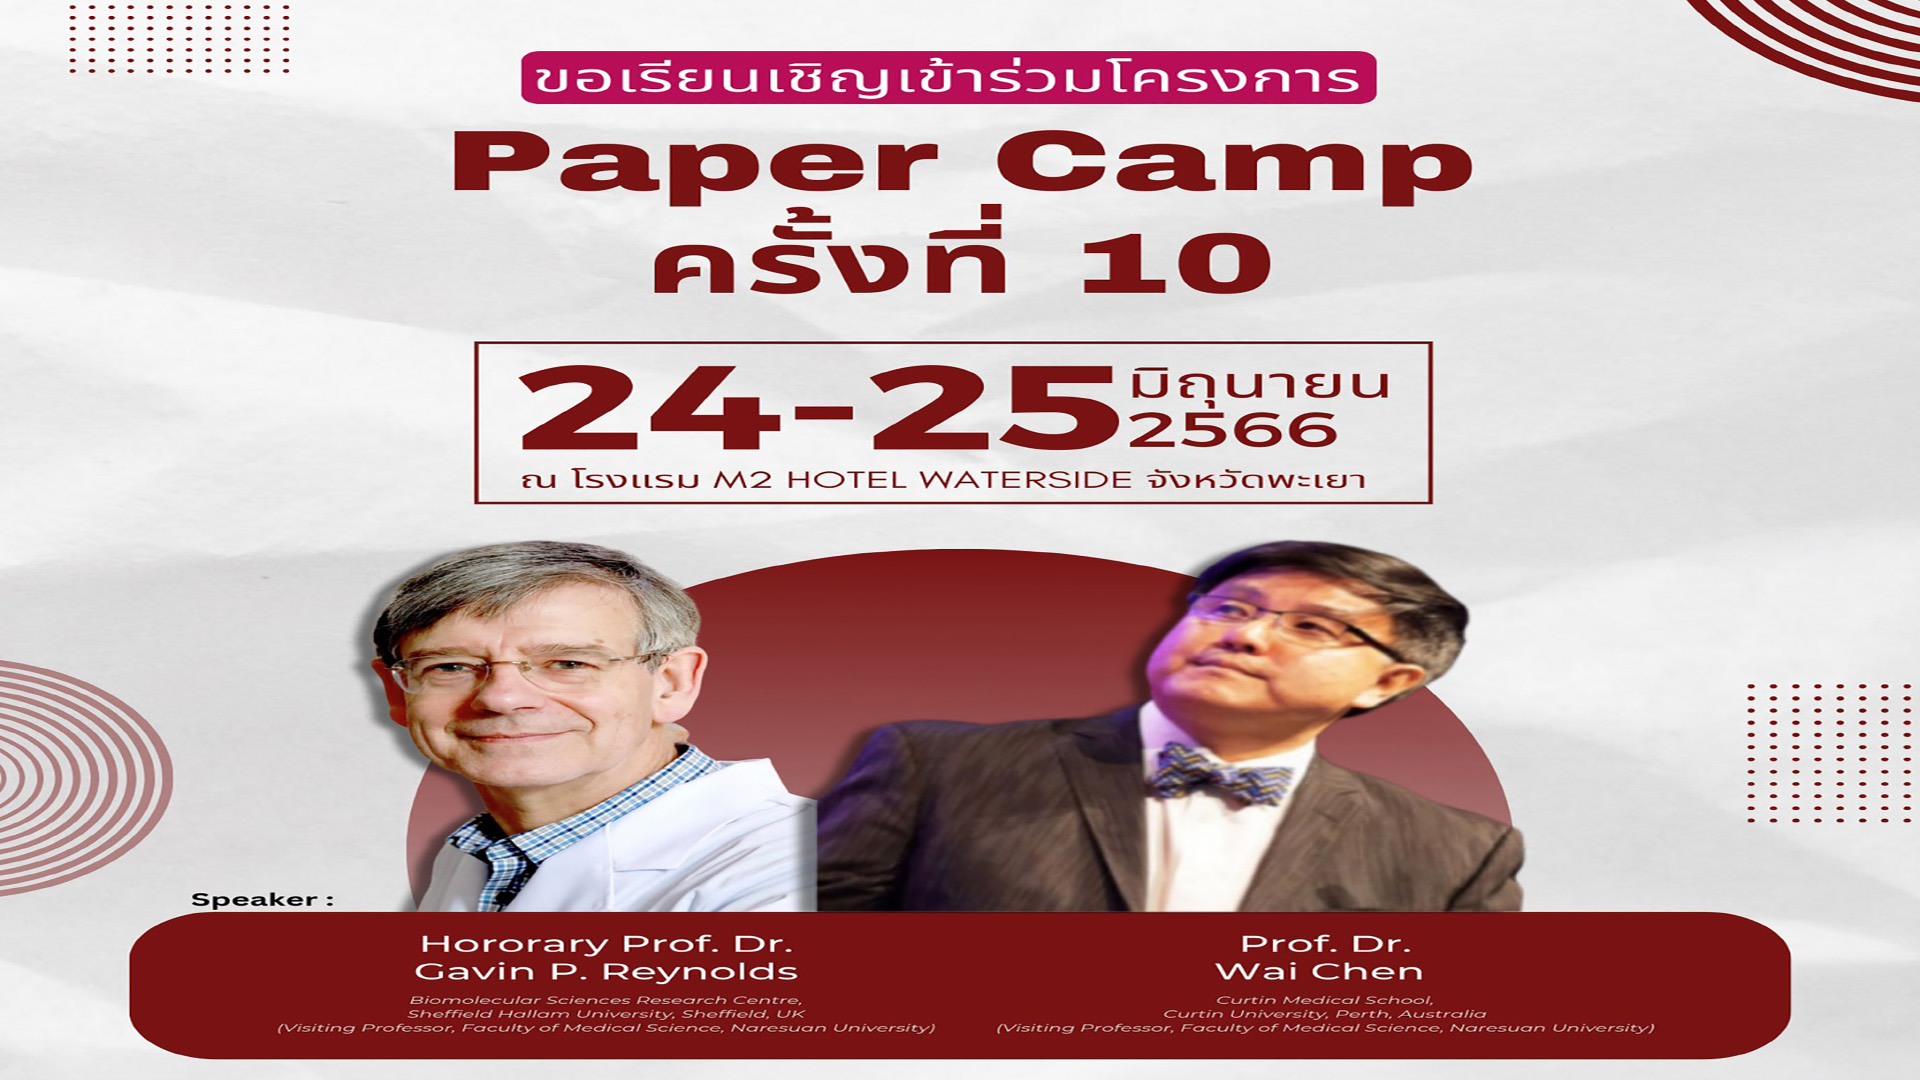 ขอเรียนเชิญเข้าร่วมโครงการ “ Paper Camp ครั้งที่ 10 ”